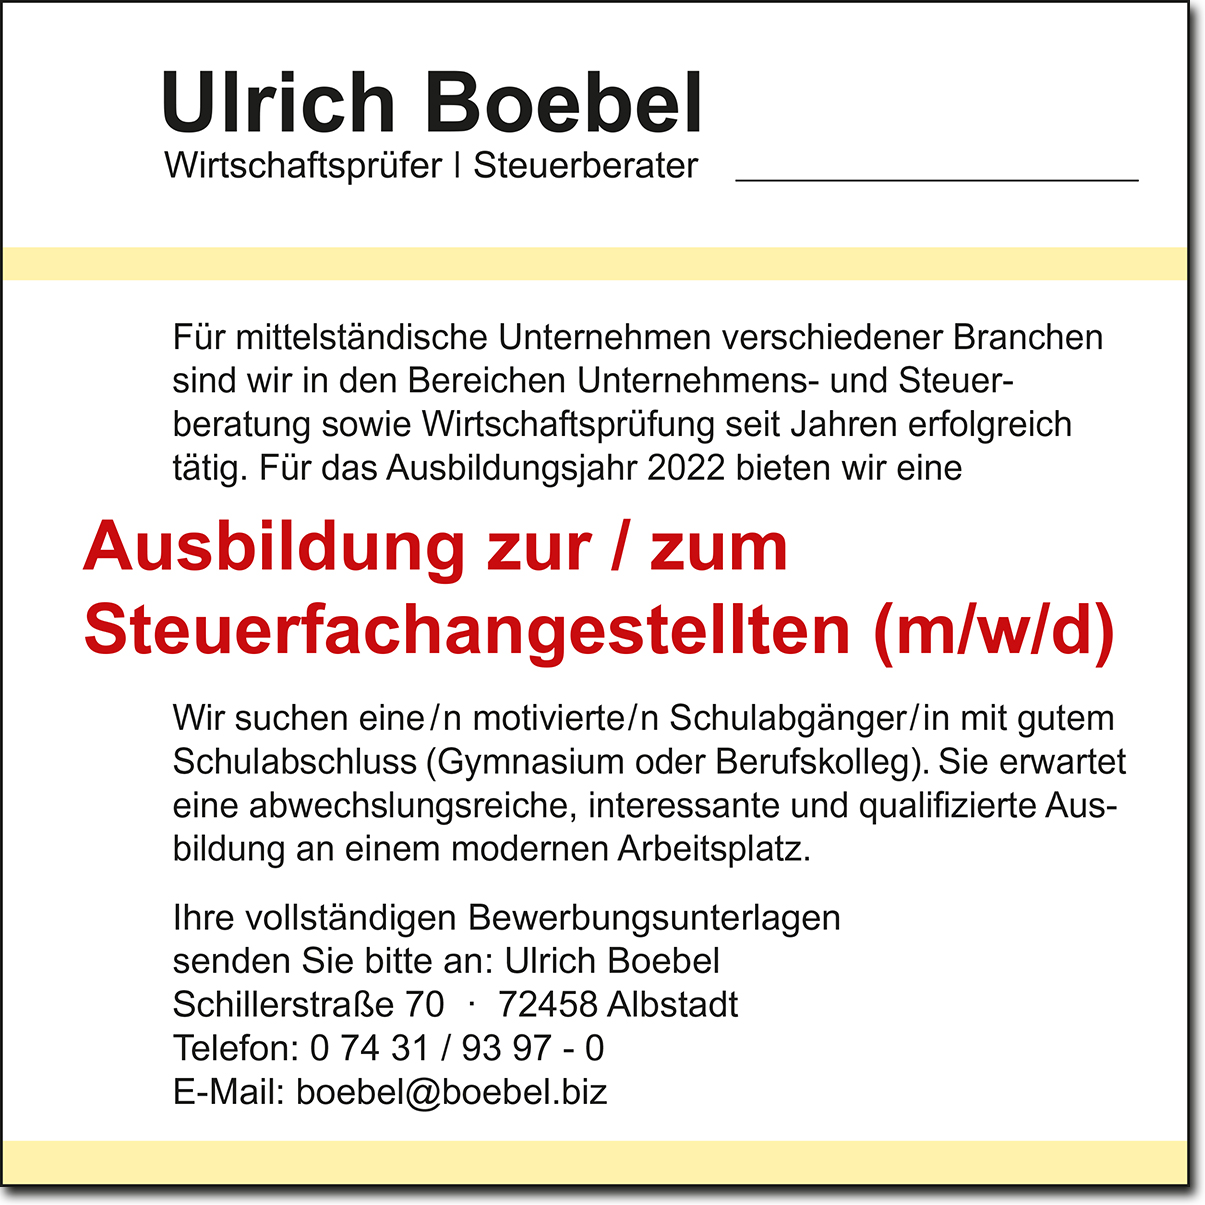 Ulrich Boebel